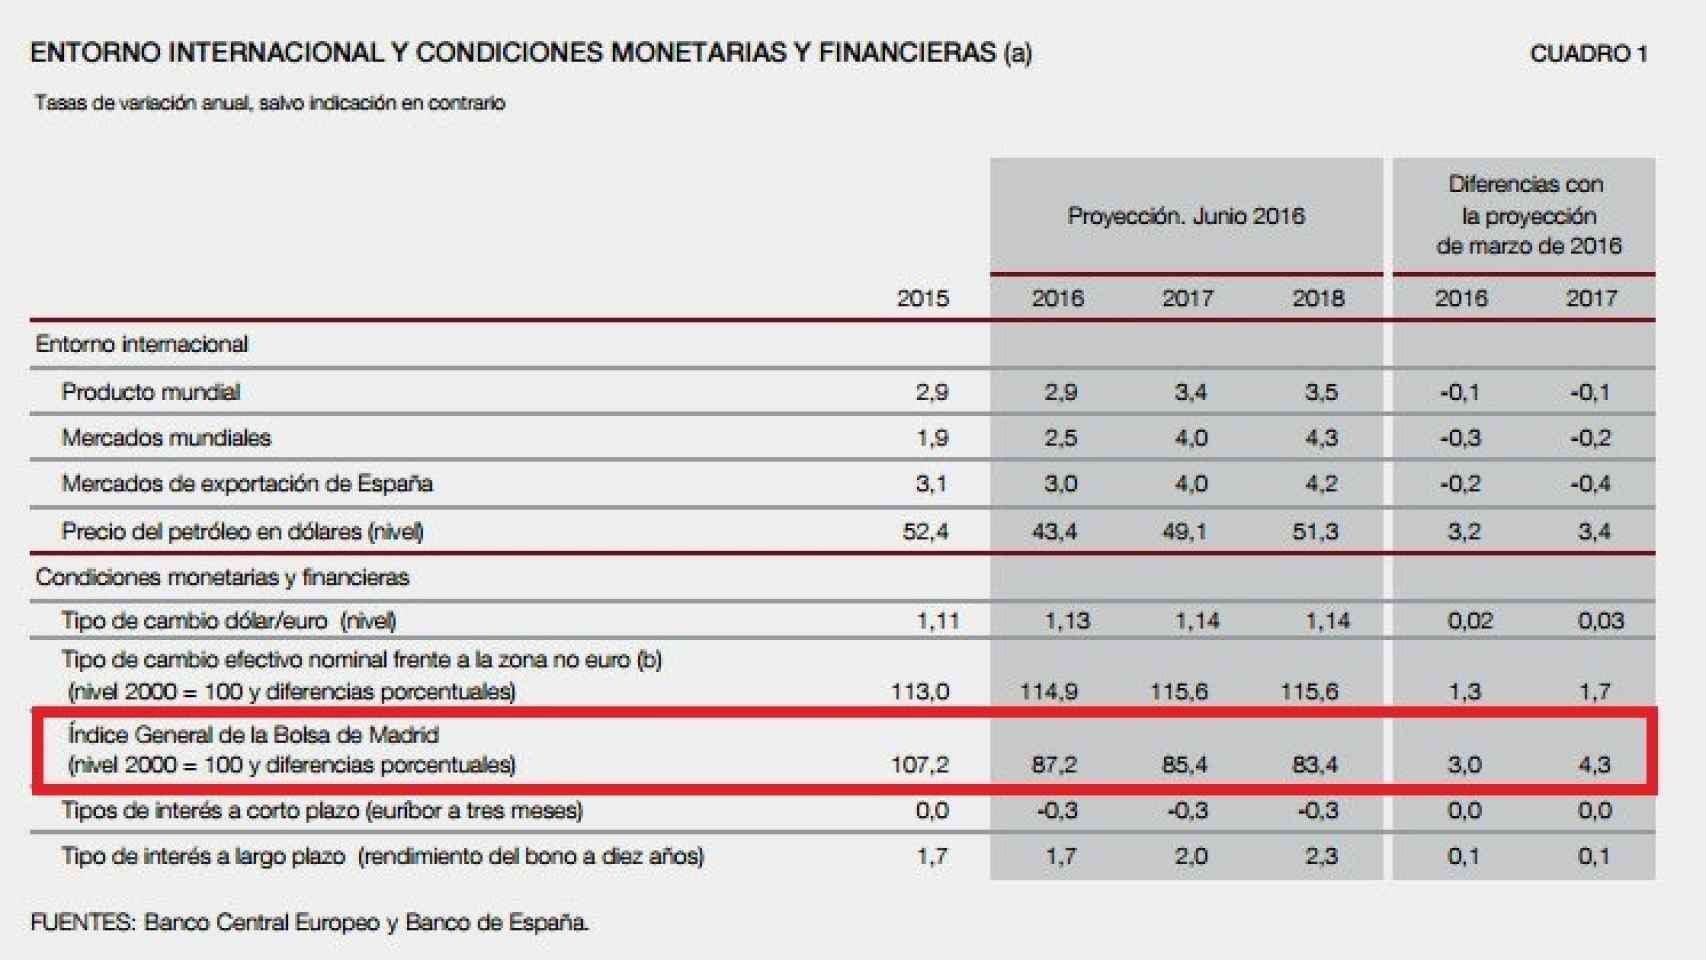 Proyecciones sintéticas del Banco de España.